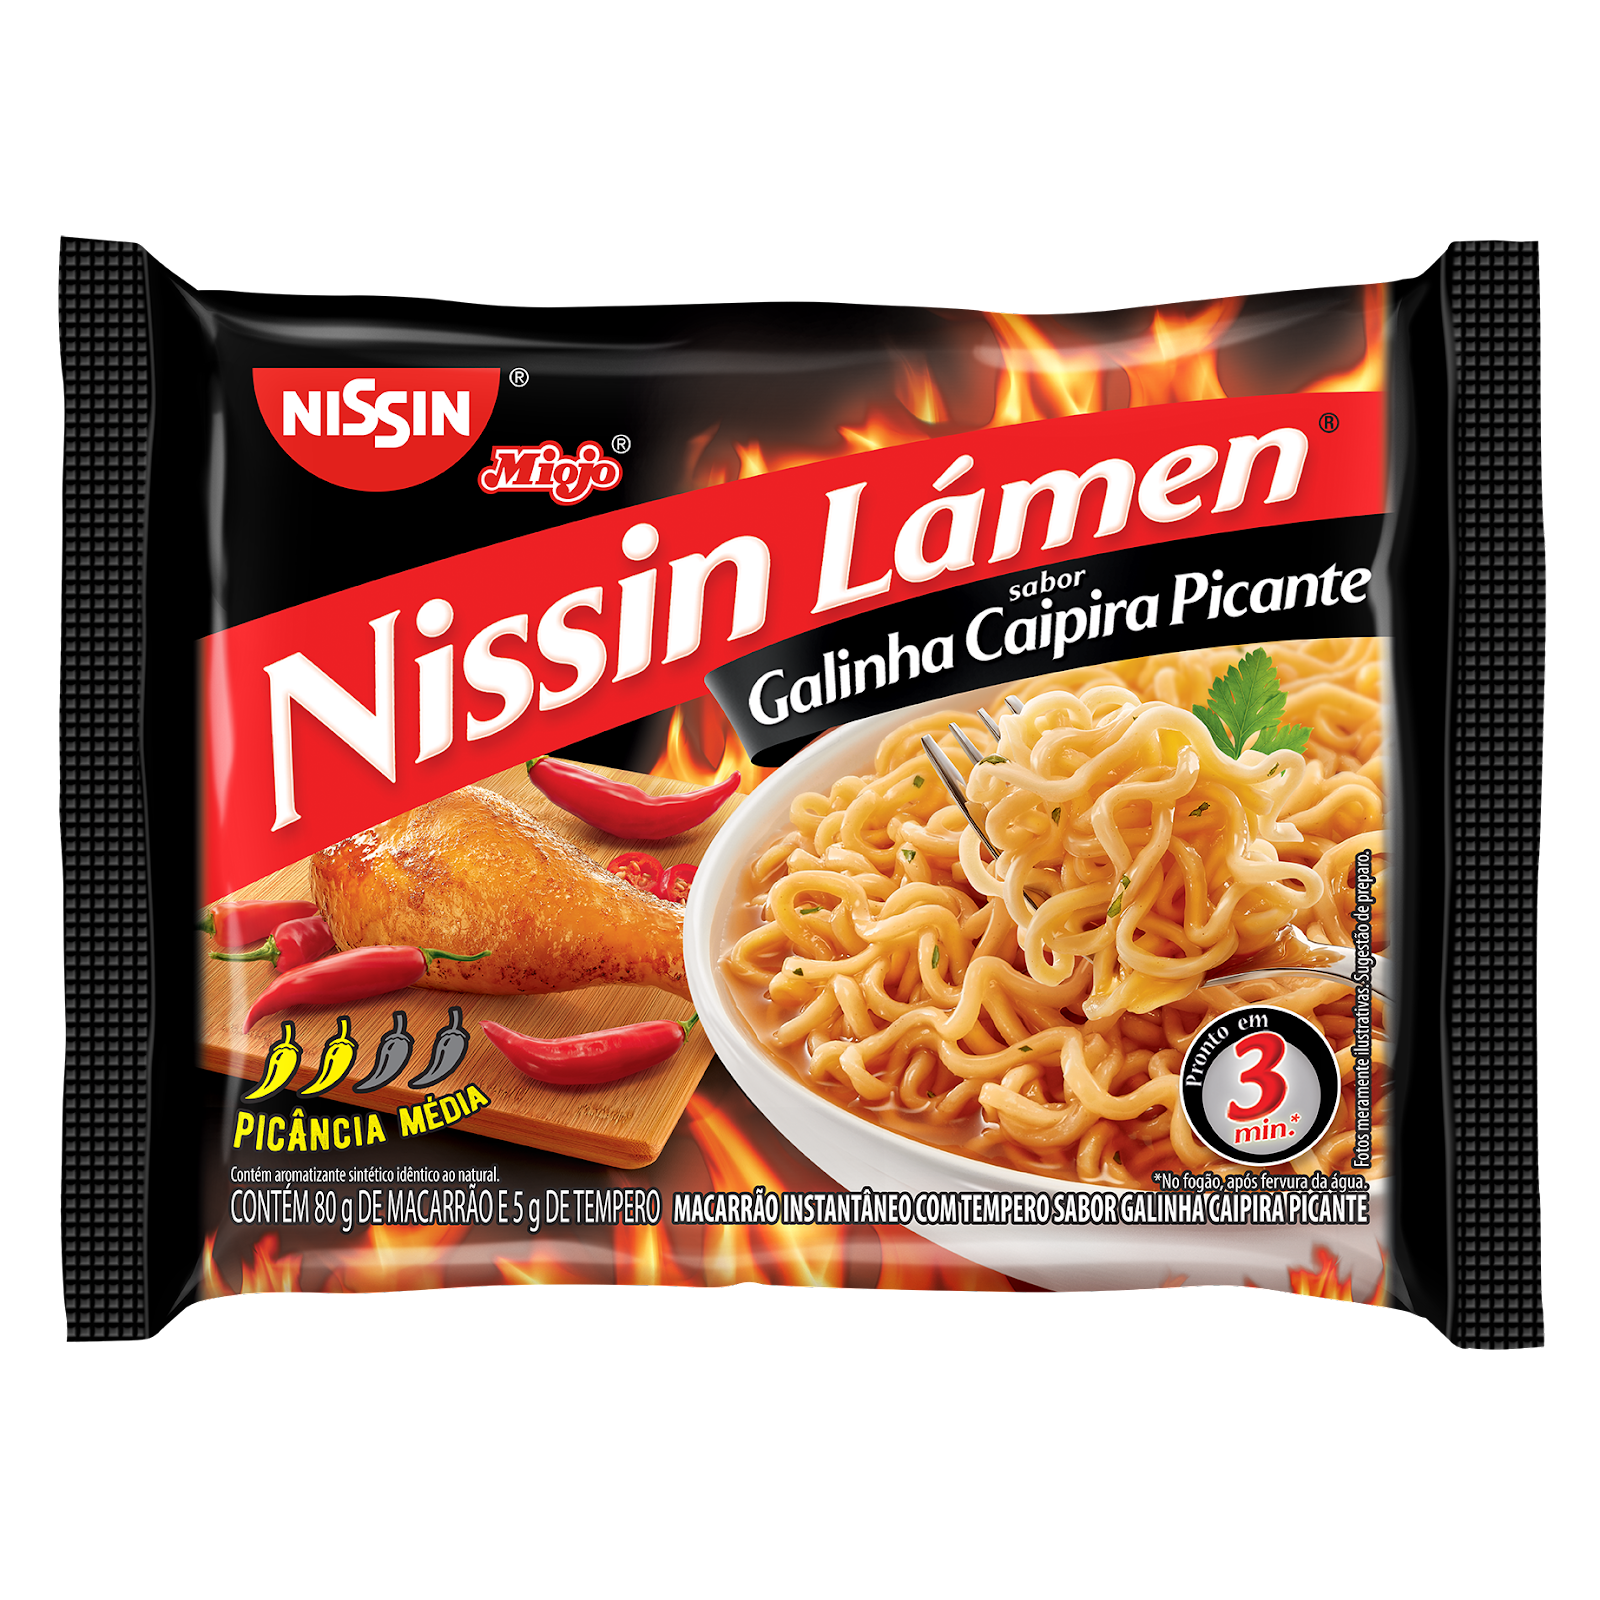 Novo lançamento da Nissin